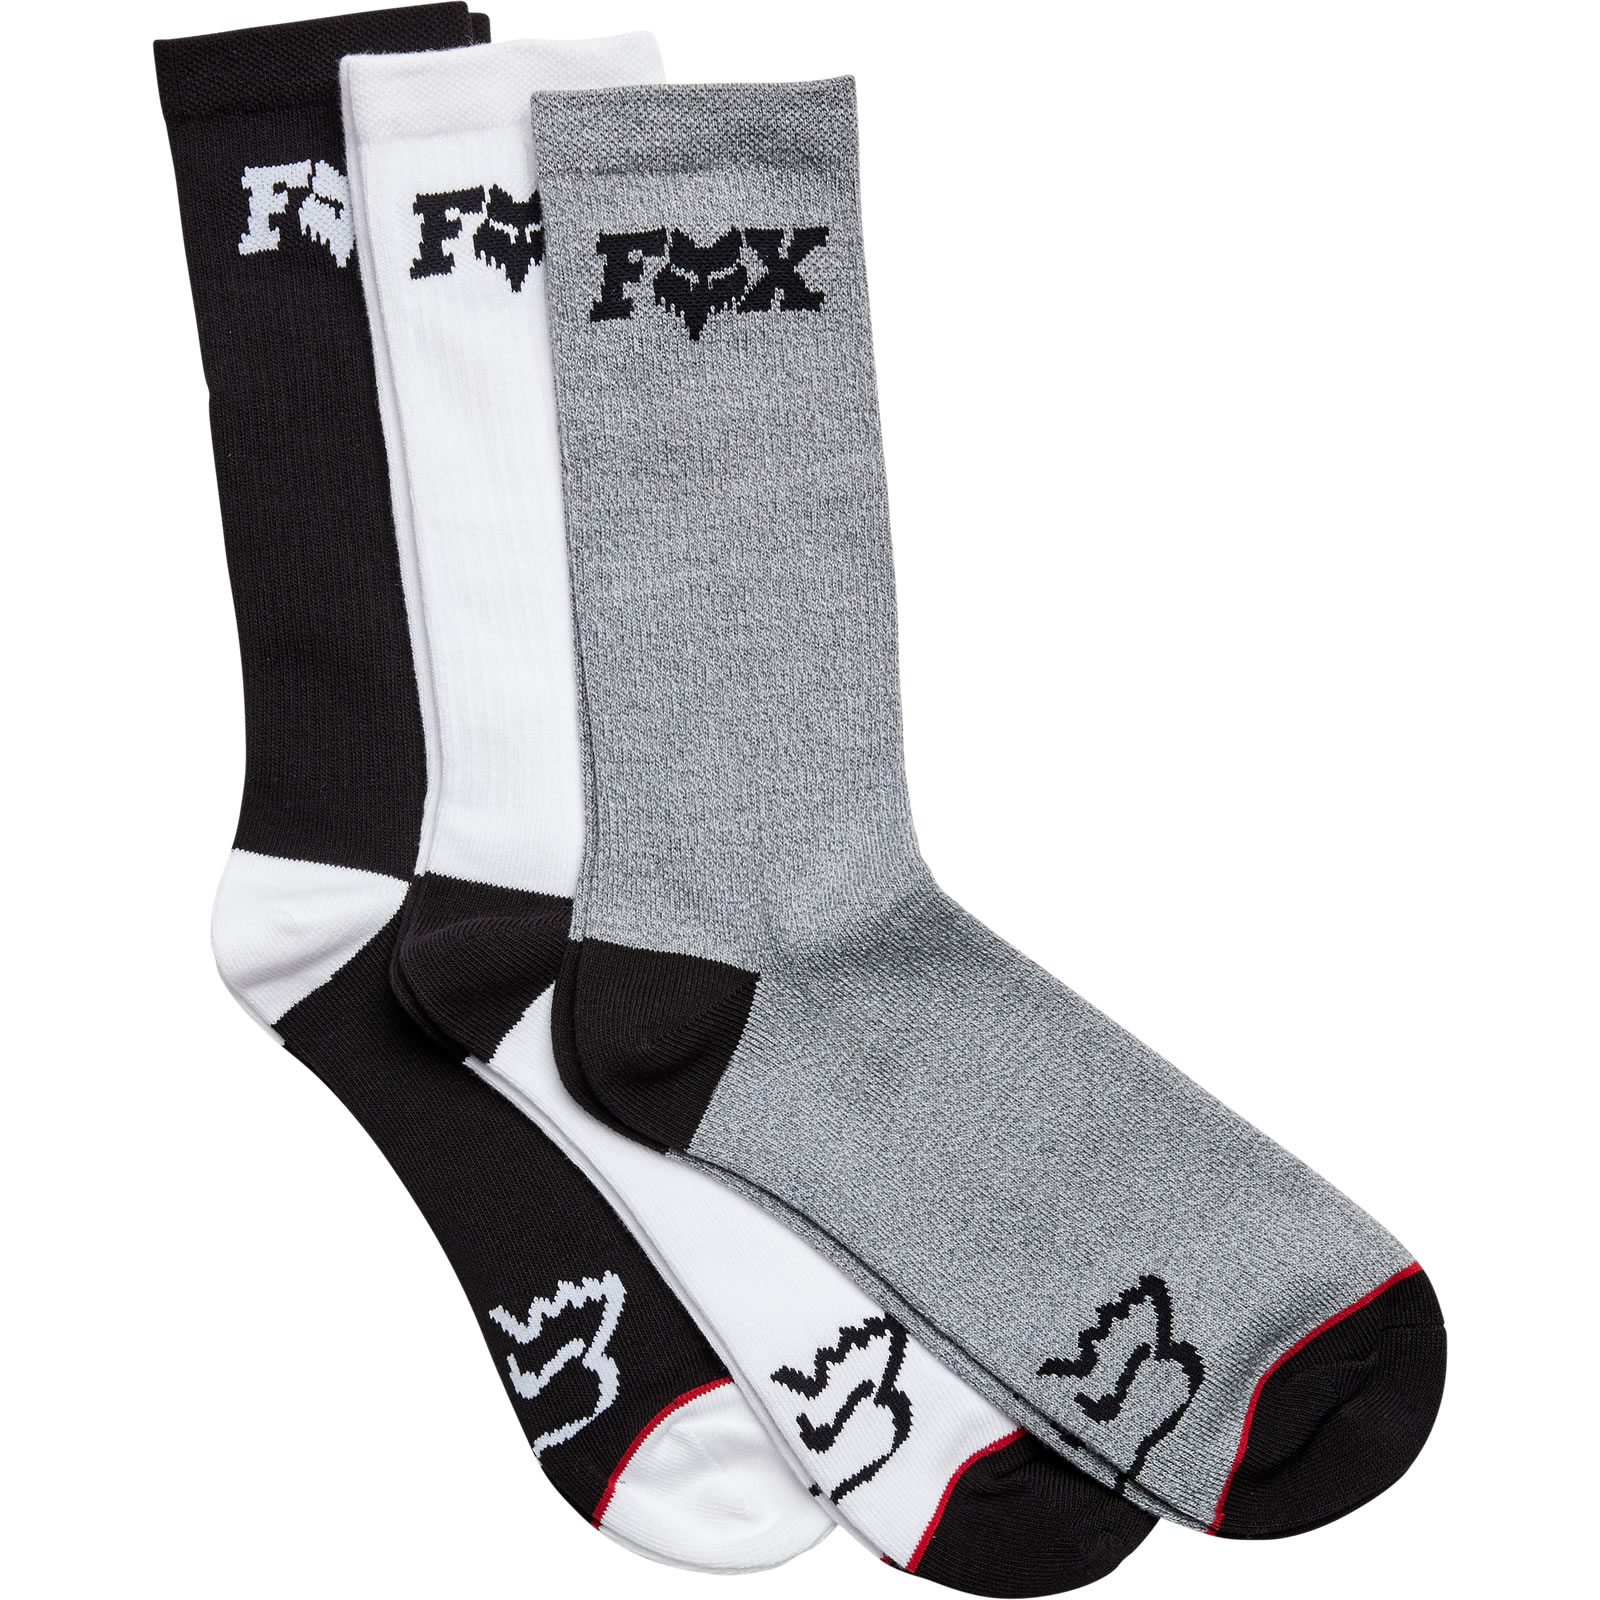 socks 3 pack 2